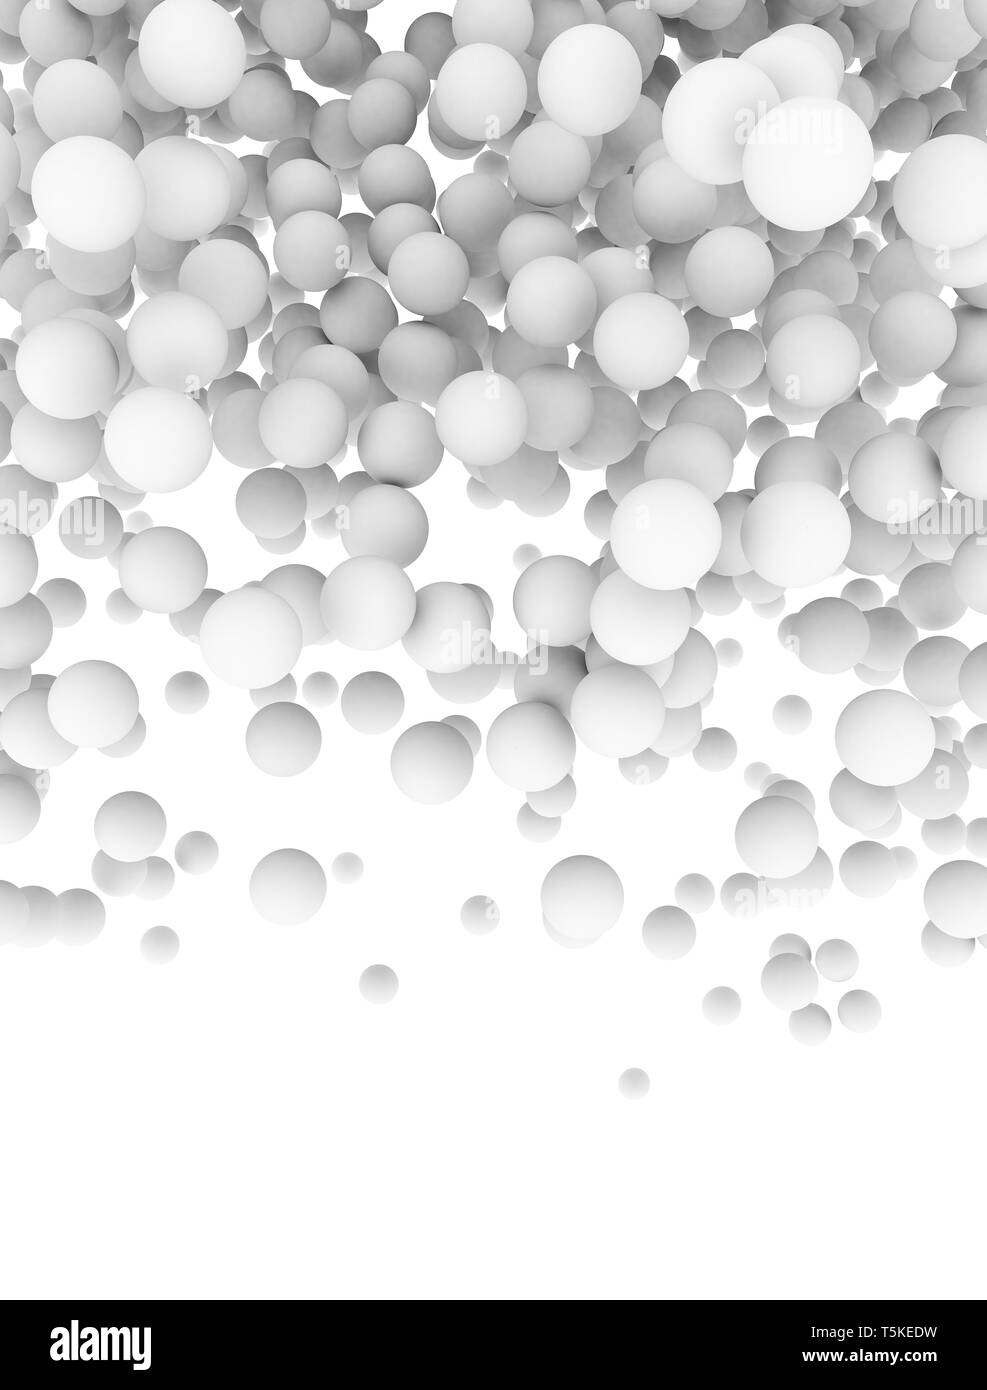 Close up image of many white molecules isolated on white background Stock Photo